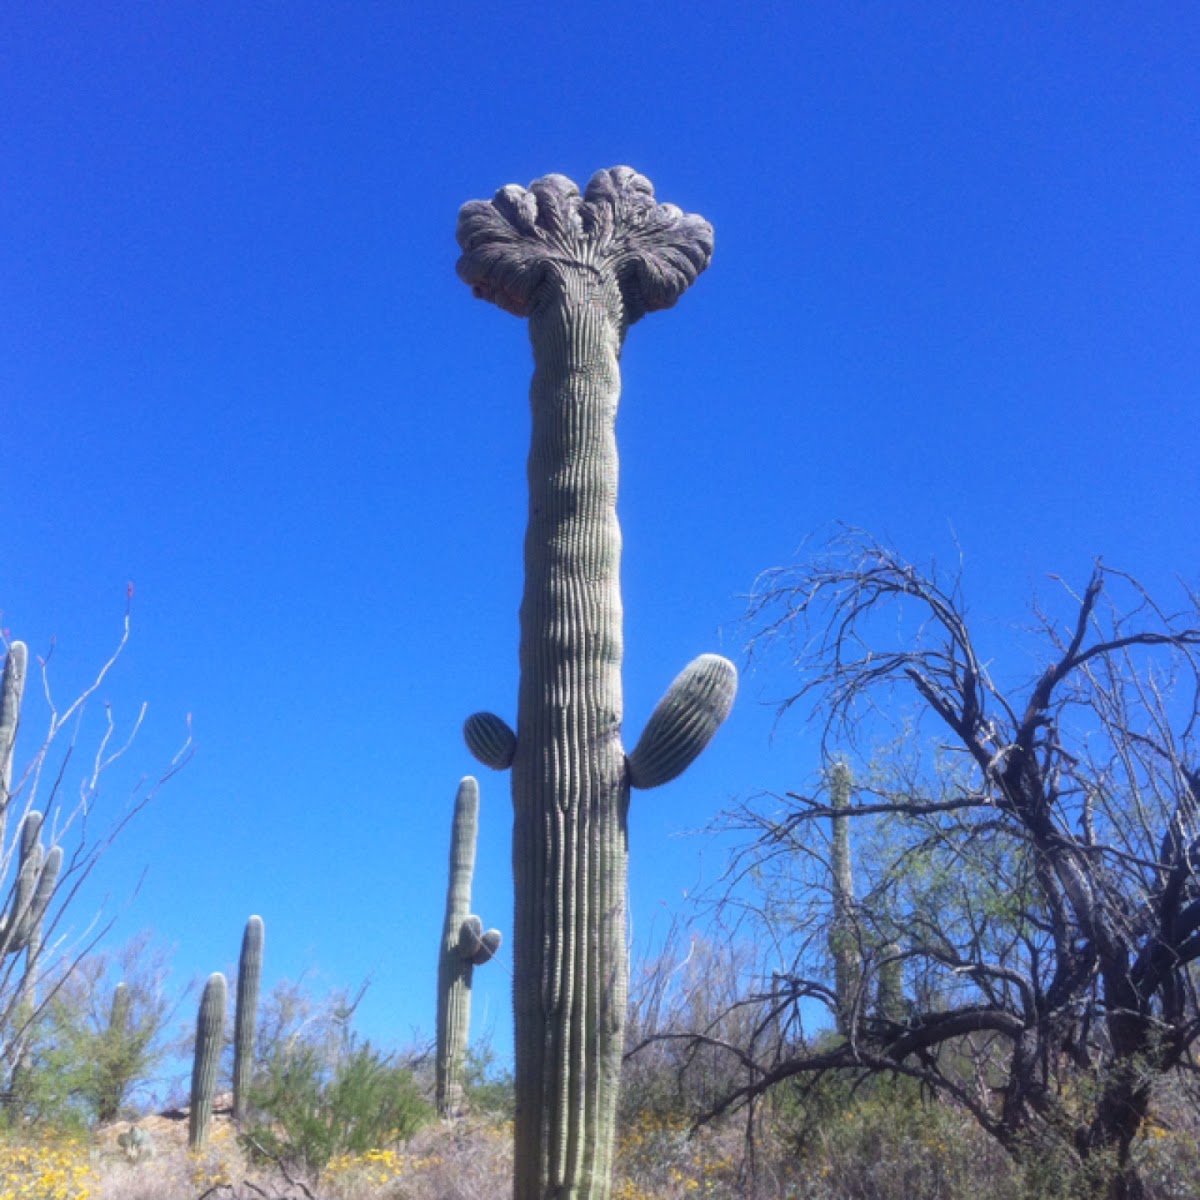 Sahuaro cactus